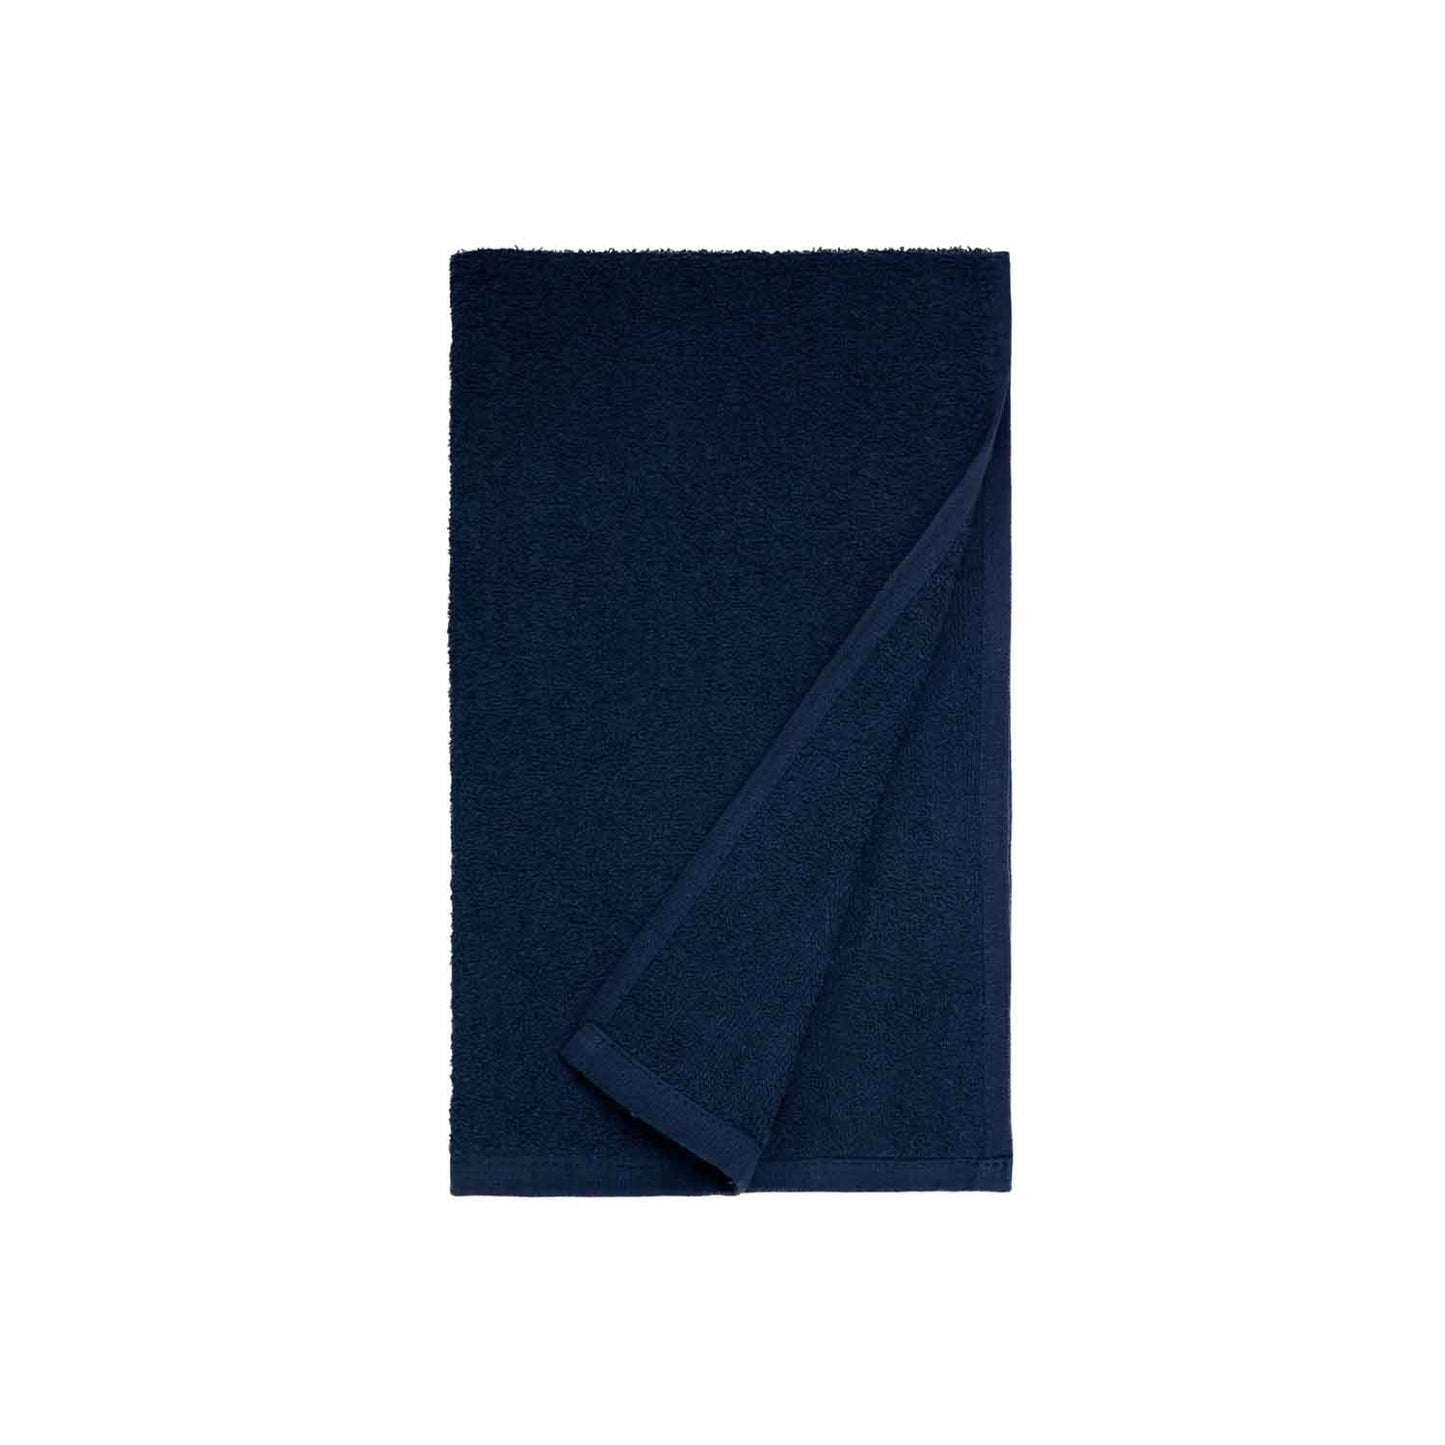 American Dawn | Ascent28 16X28 Inch Dark Blue Car Wash Towel American Dawn